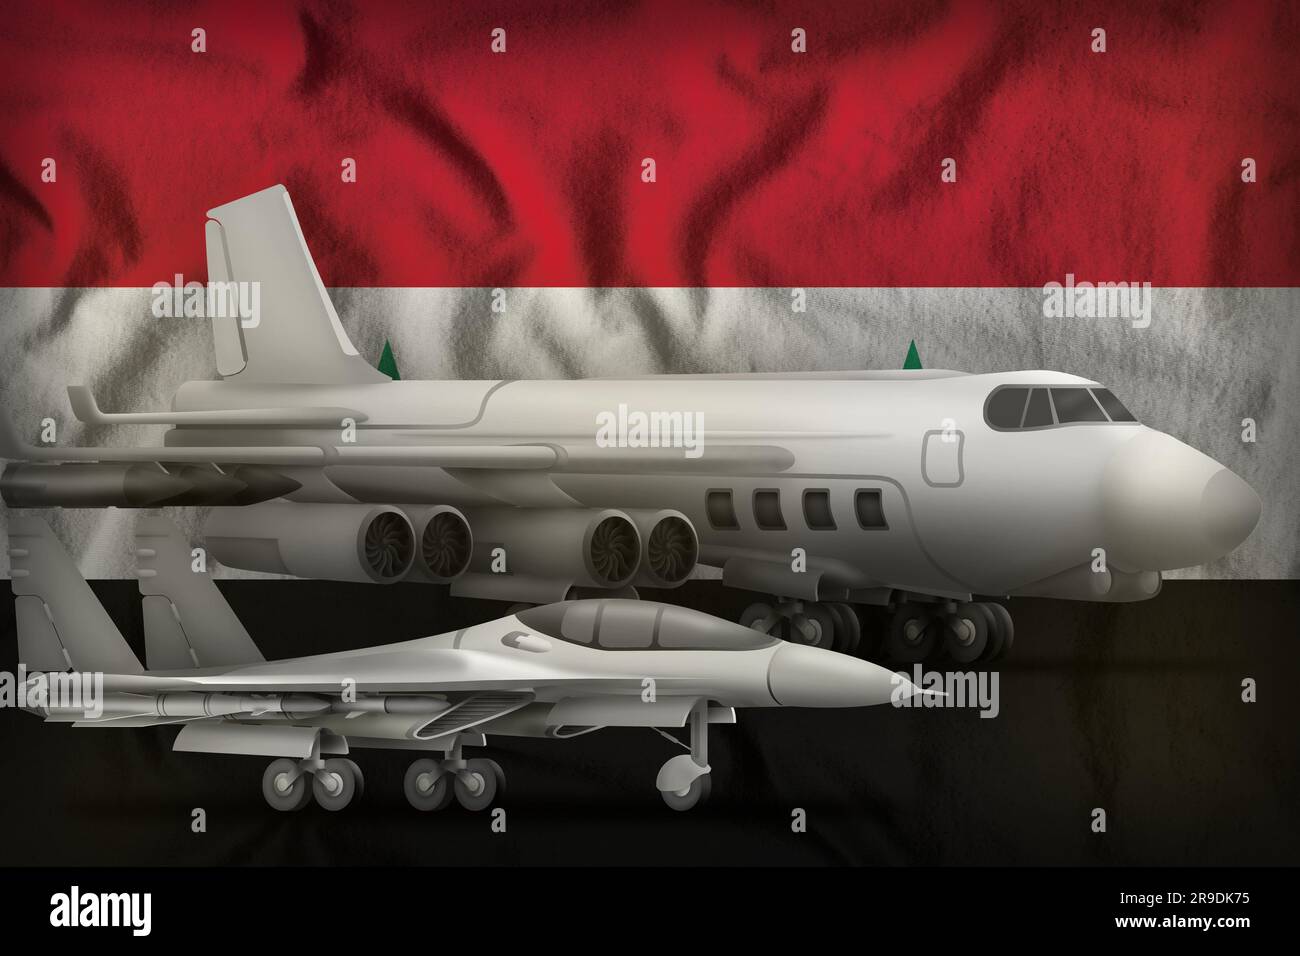 Les forces aériennes sur le fond du drapeau de la République arabe syrienne. Concept des forces aériennes de la République arabe syrienne. 3D Illustration Banque D'Images